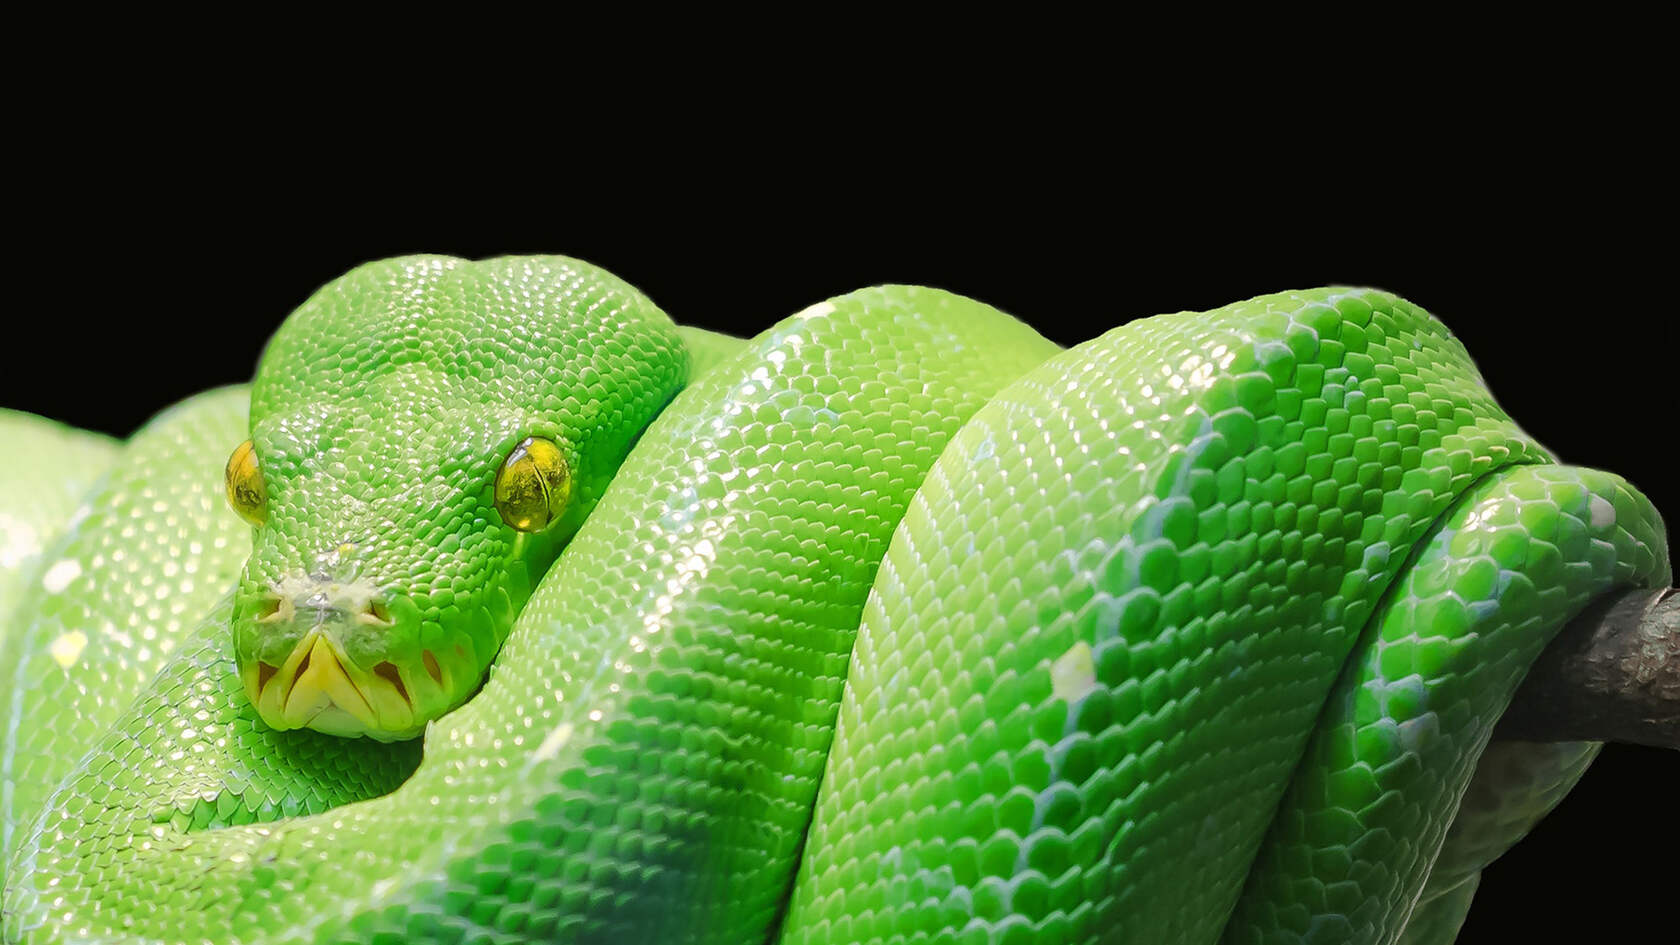 让人闻风丧胆的冷血动物“蛇”的动物壁纸图片套图3